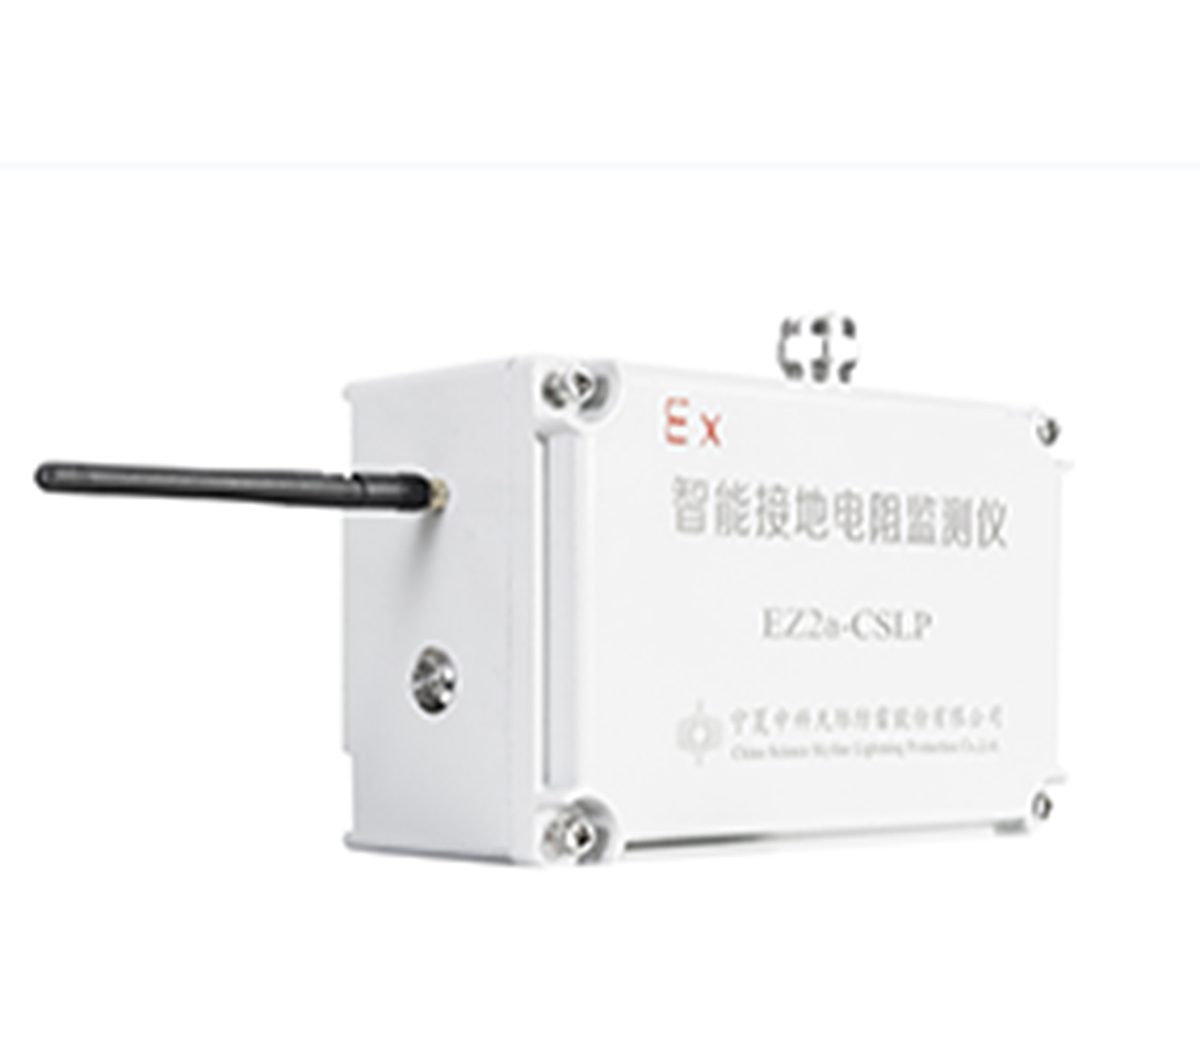 EZ2a-CSLP 智能接地电阻监测仪